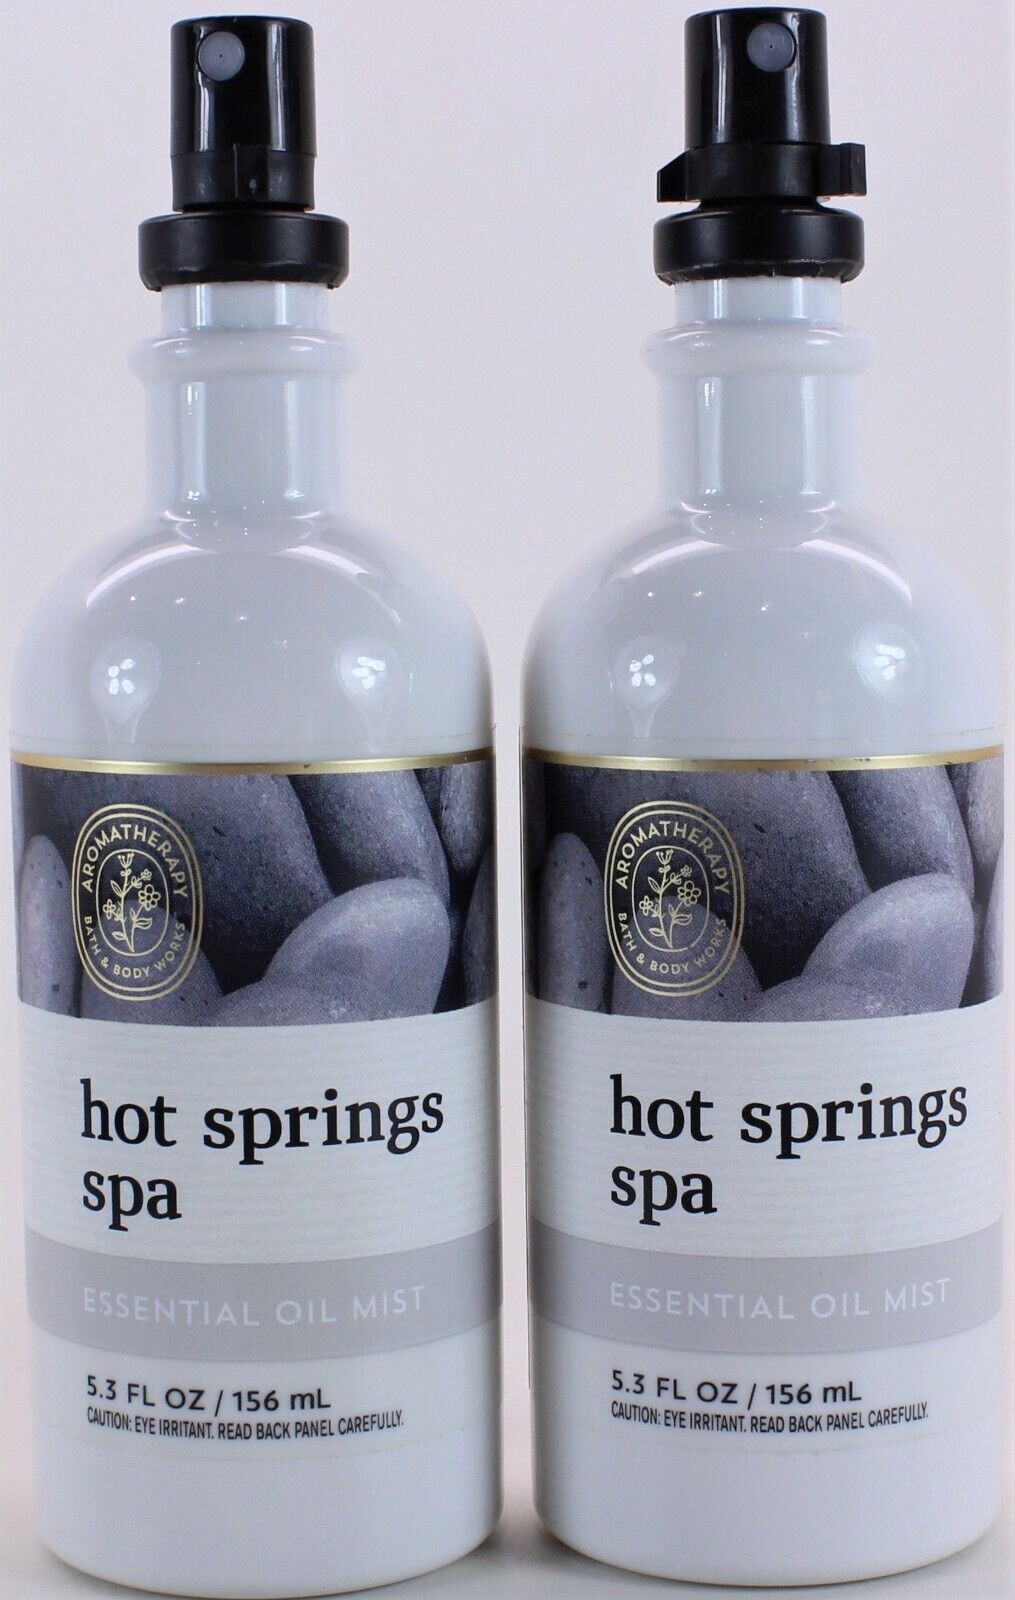 QTY 2 - Bath & Body Works HOT SPRINGS SPA Essential Oil Body Mist 5.3 oz Bath & Body Works